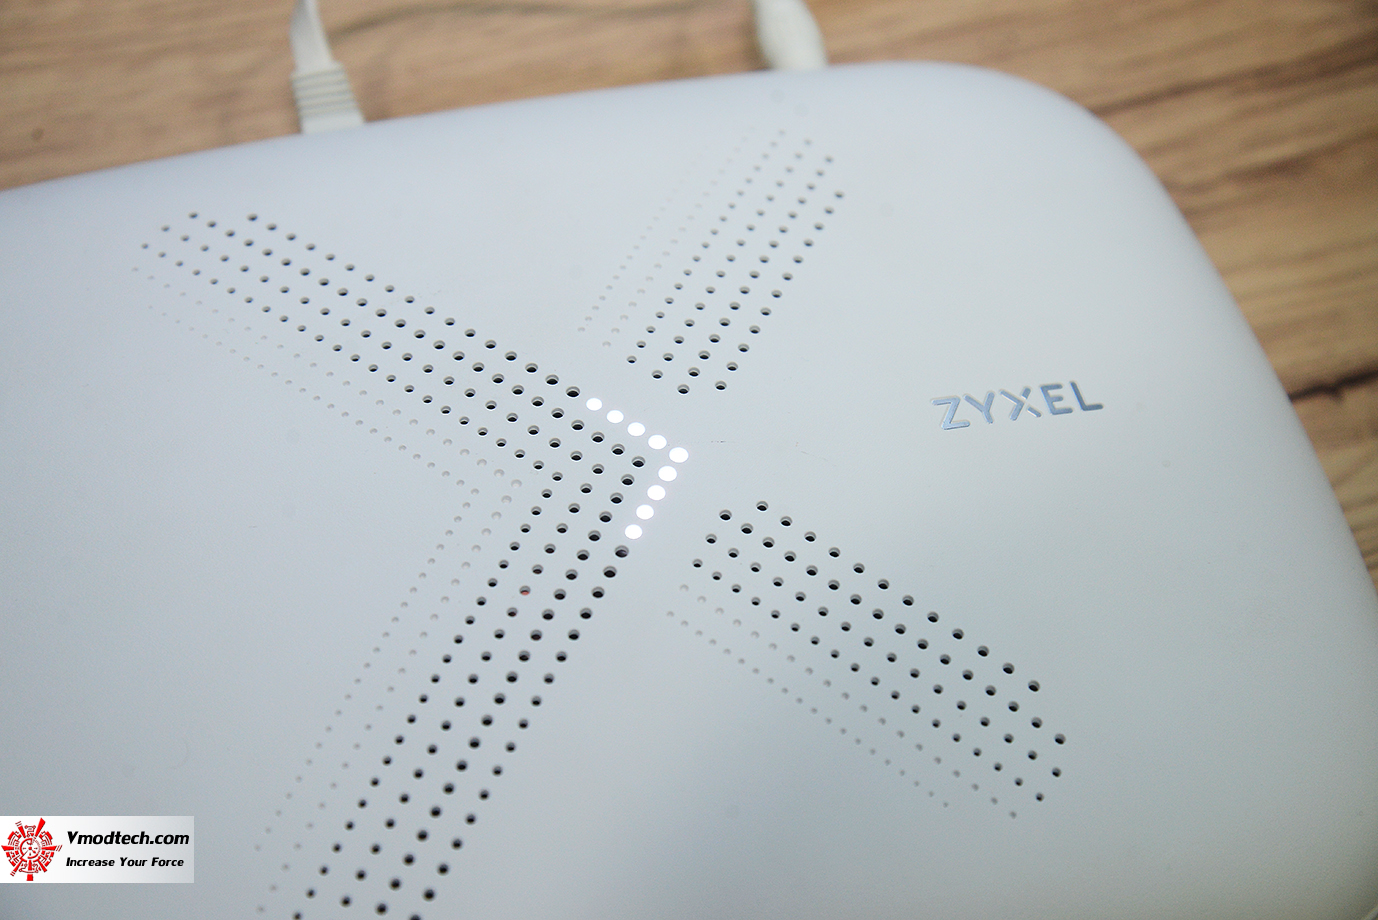 dsc 1187 ZYXEL Multy X AC3000 Tri Band WiFi System Review 